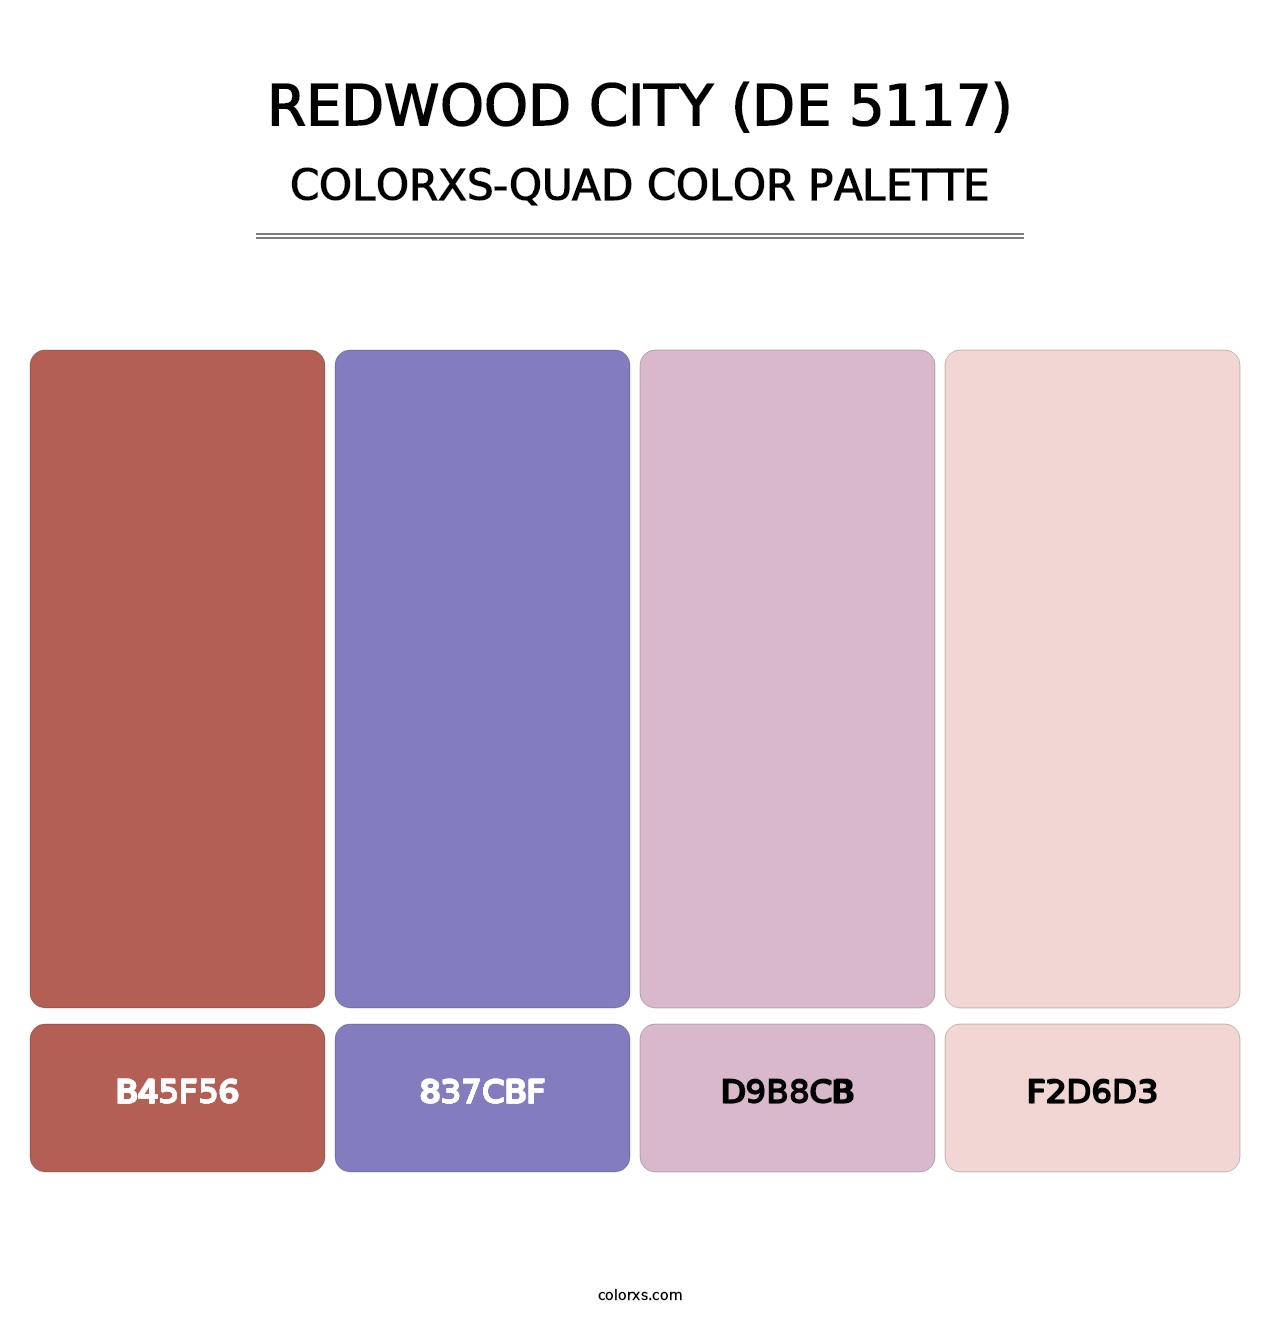 Redwood City (DE 5117) - Colorxs Quad Palette